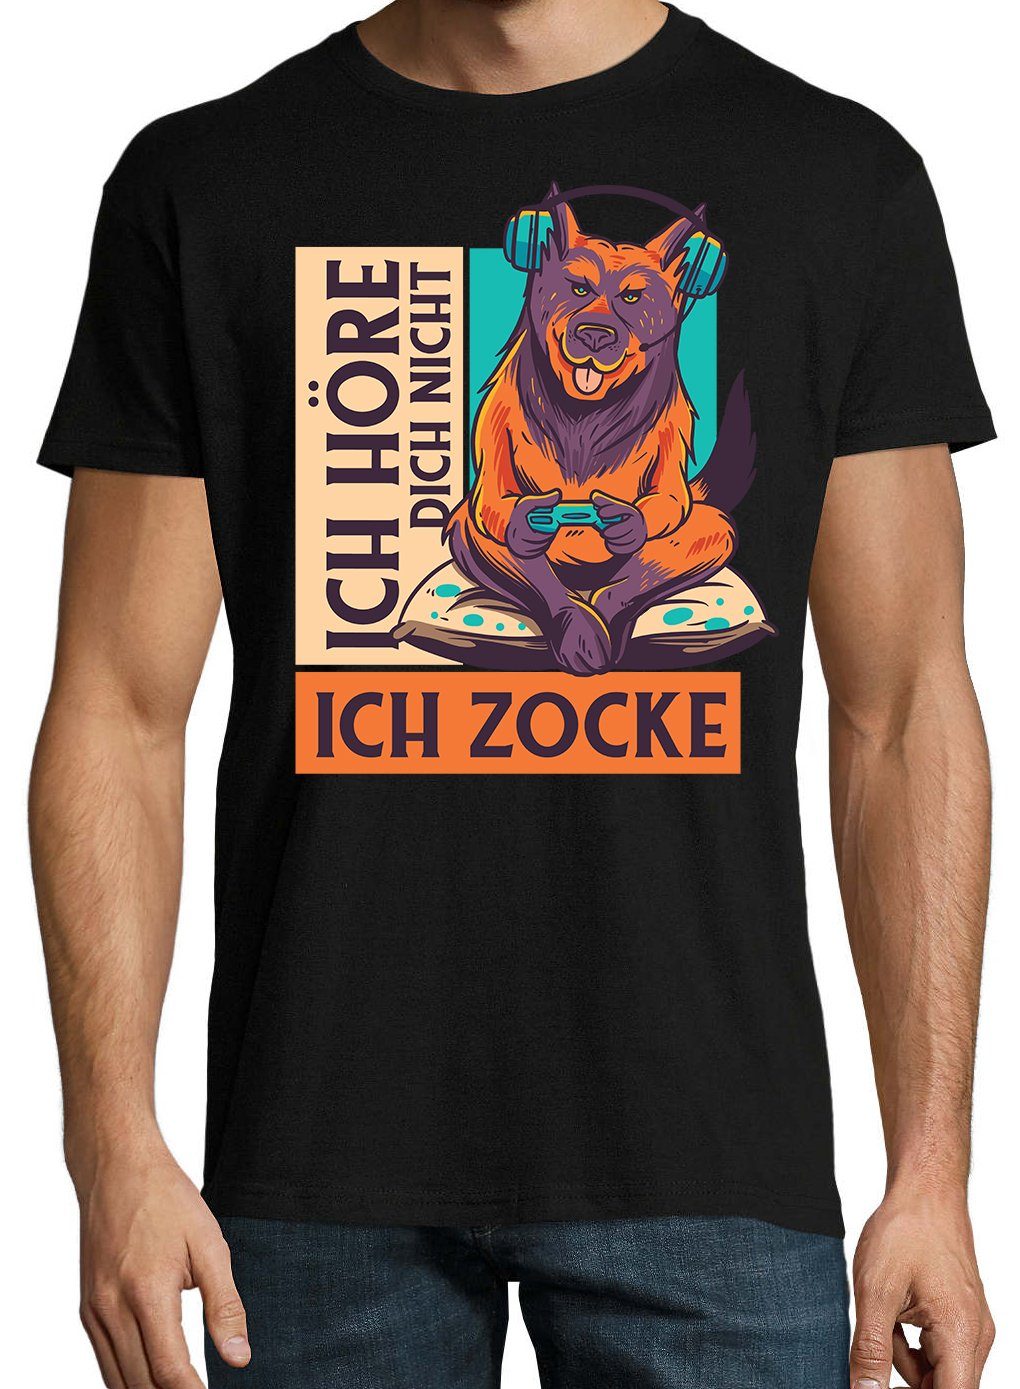 Shirt Schwarz Ich trenigdem Zocke" Youth T-Shirt Herren mit Designz Dich "Ich Frontprint Höre Nicht,